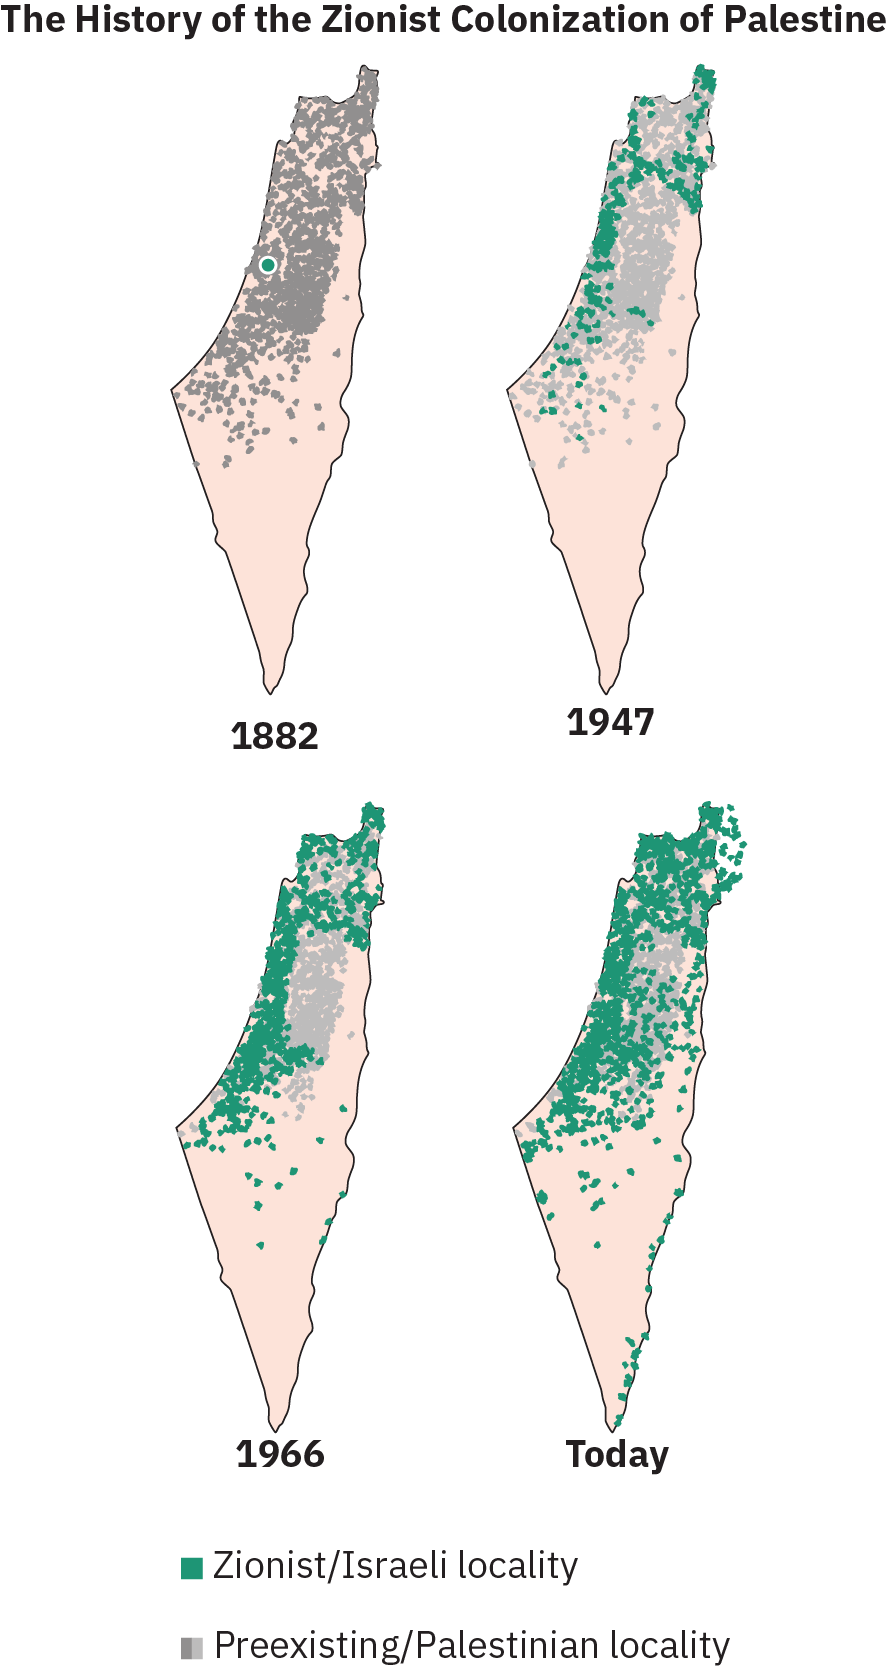 Infográfico intitulado “A História da colonização sionista da Palestina” e consiste em quatro mapas separados do que hoje é Israel, datados de 1882 até hoje. No mapa de 1882, a maior parte da terra está coberta com marcas indicando localidades pré-existentes/palestinas, com um ponto indicando uma localidade sionista/israelense. No mapa denominado 1947, o assentamento sionista/israelense aumentou para cerca de 1/3 de todos os assentamentos. No mapa de 1966, o assentamento sionista/israelense aumentou ainda mais, agora consistindo em mais da metade de todos os assentamentos. No mapa rotulado hoje, os assentamentos sionistas/israelenses dominam, com assentamentos preexistentes/palestinos ocupando algumas áreas.